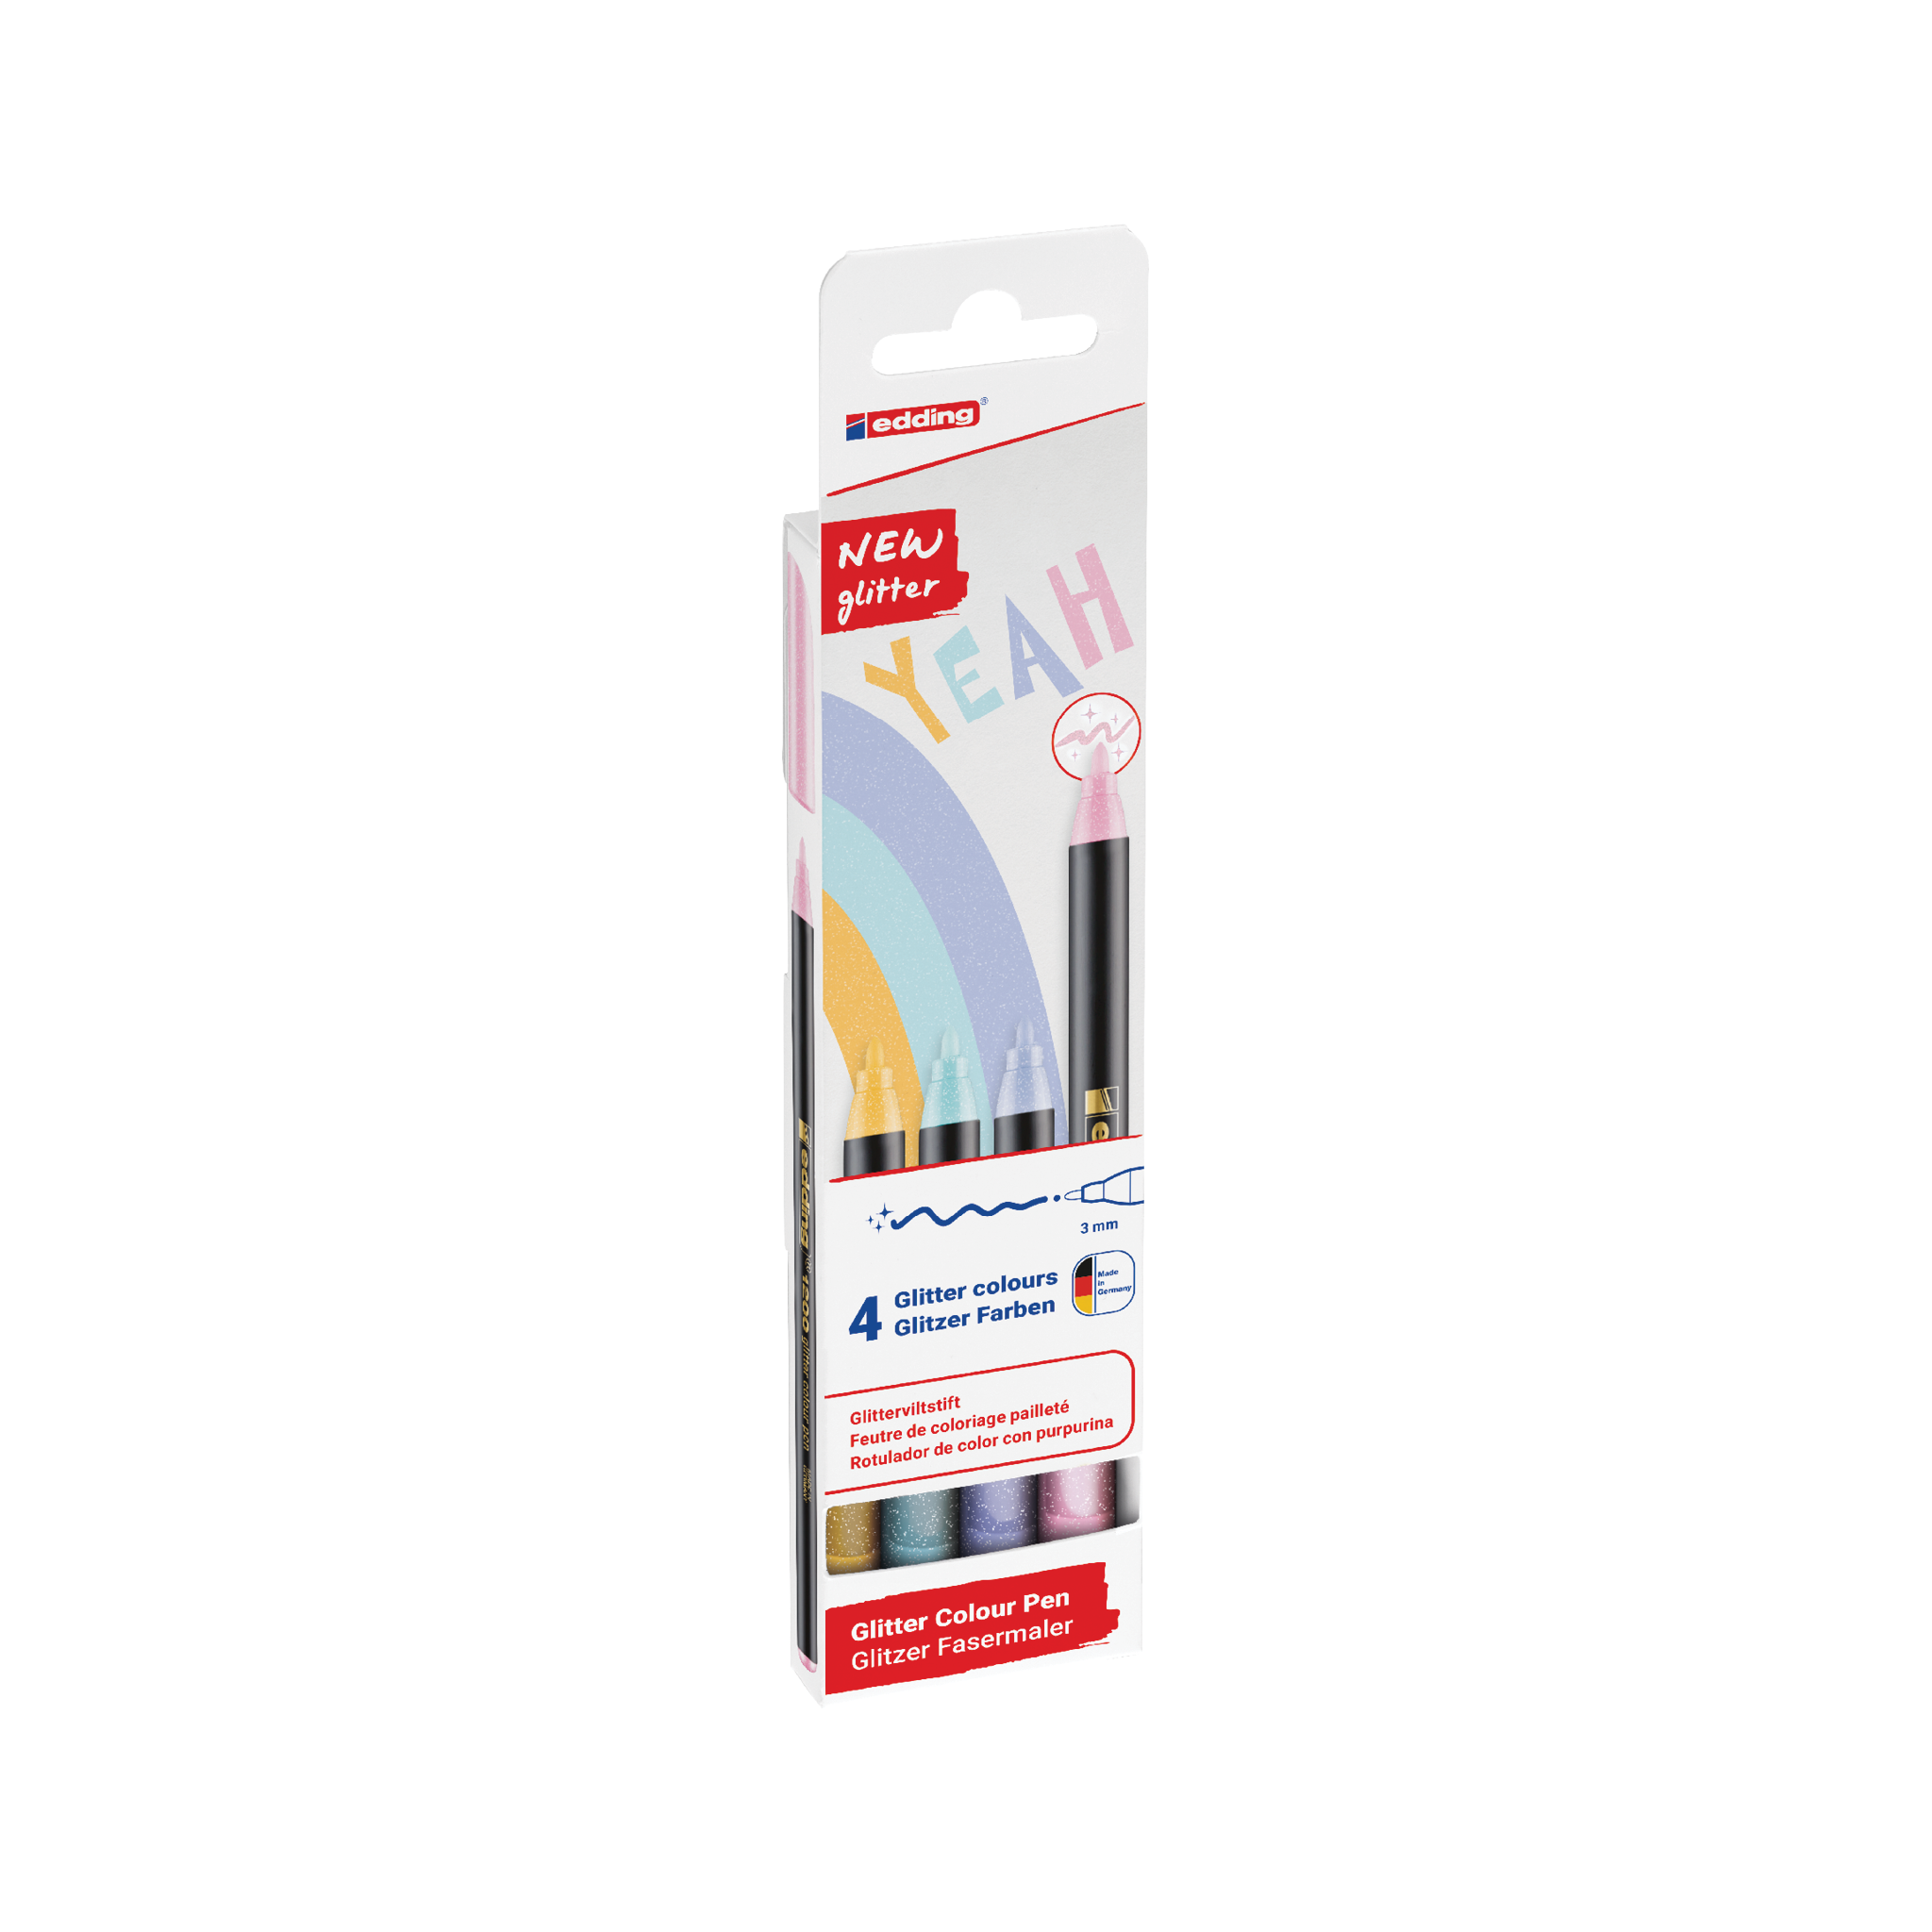 Ein Paket mit einem neuen edding 1200 glitzer Fasermaler 4er-Set mit vier verschiedenen Pastell-Glitzerfarben, ideal für kreative und funkelnde Schreib- oder Zeichenprojekte.